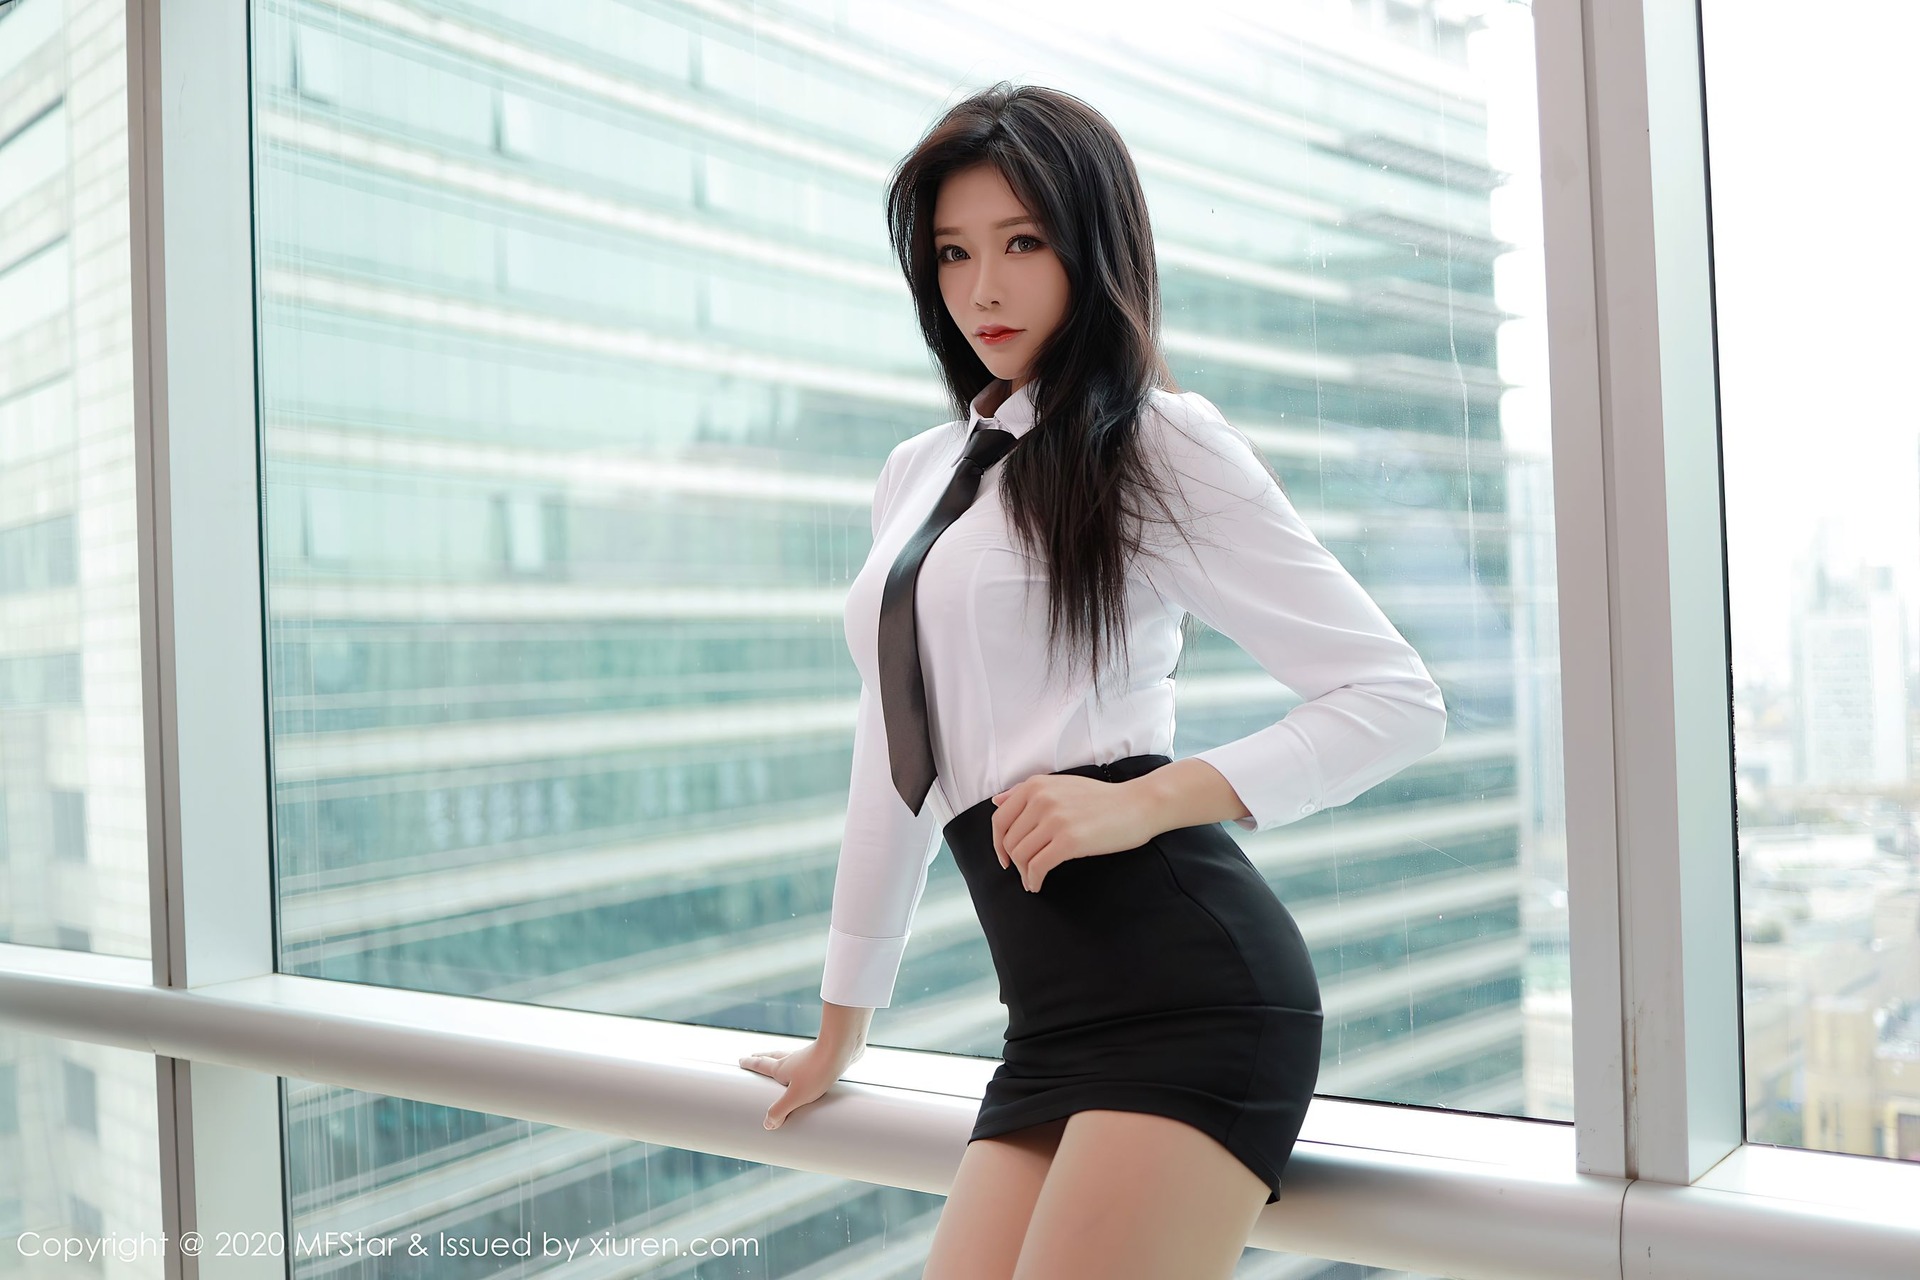 Women Model Chinese Model Asian Tie White Shirt Long Hair Brunette Dark Hair Lipstick Office Girl 1920x1280